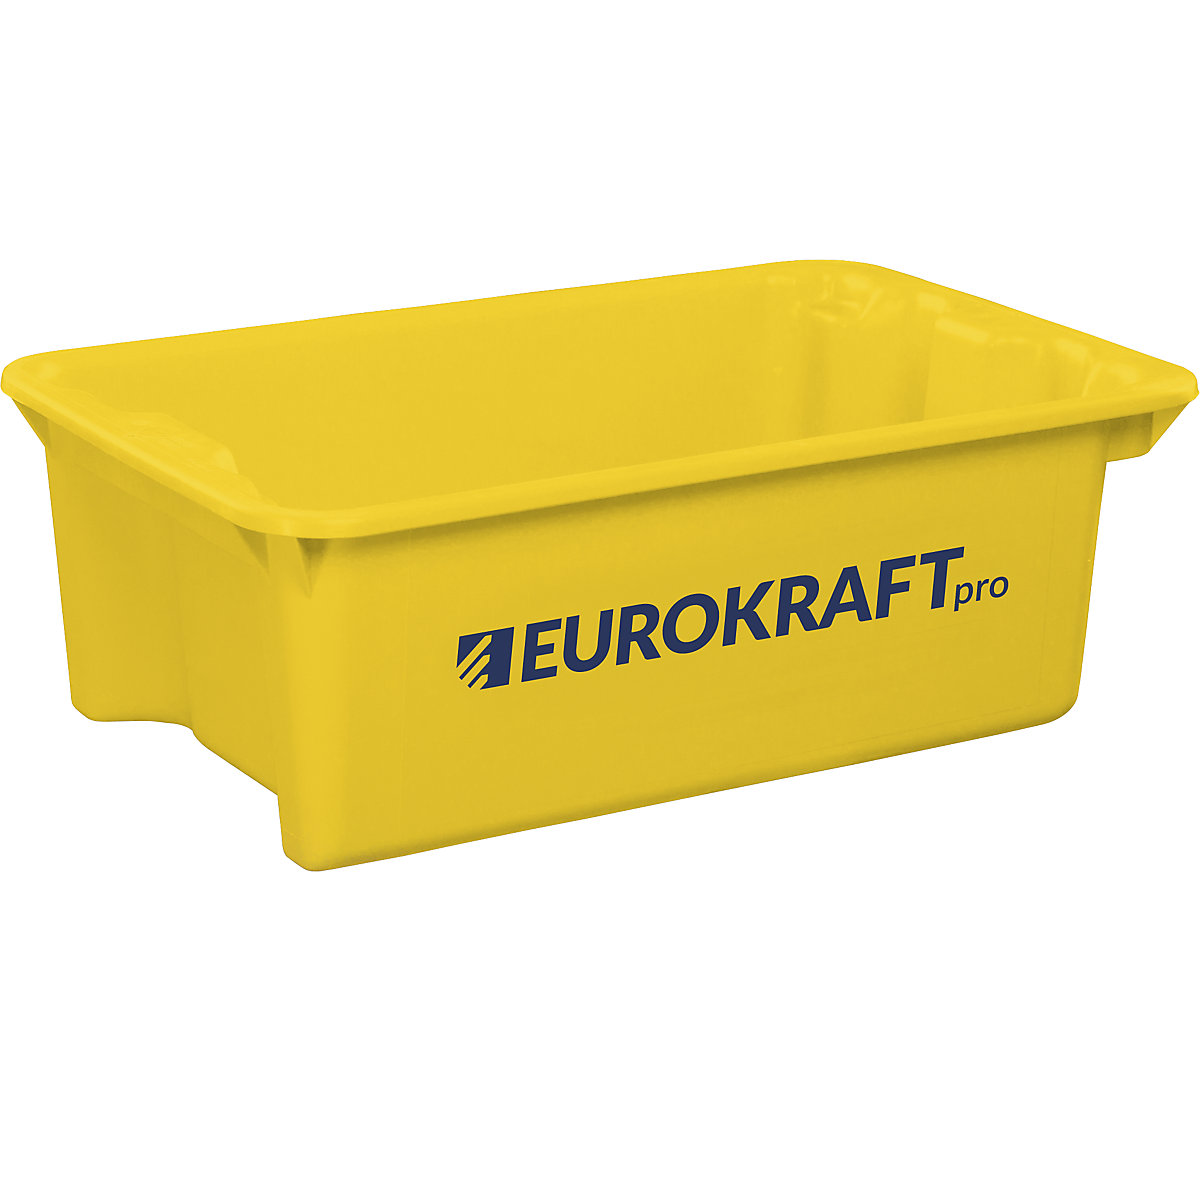 Otočná stohovací nádoba z polypropylenu vhodného pro potraviny – eurokraft pro, objem 34 l, bal.j. 3 ks, stěny a dno plné, žlutá